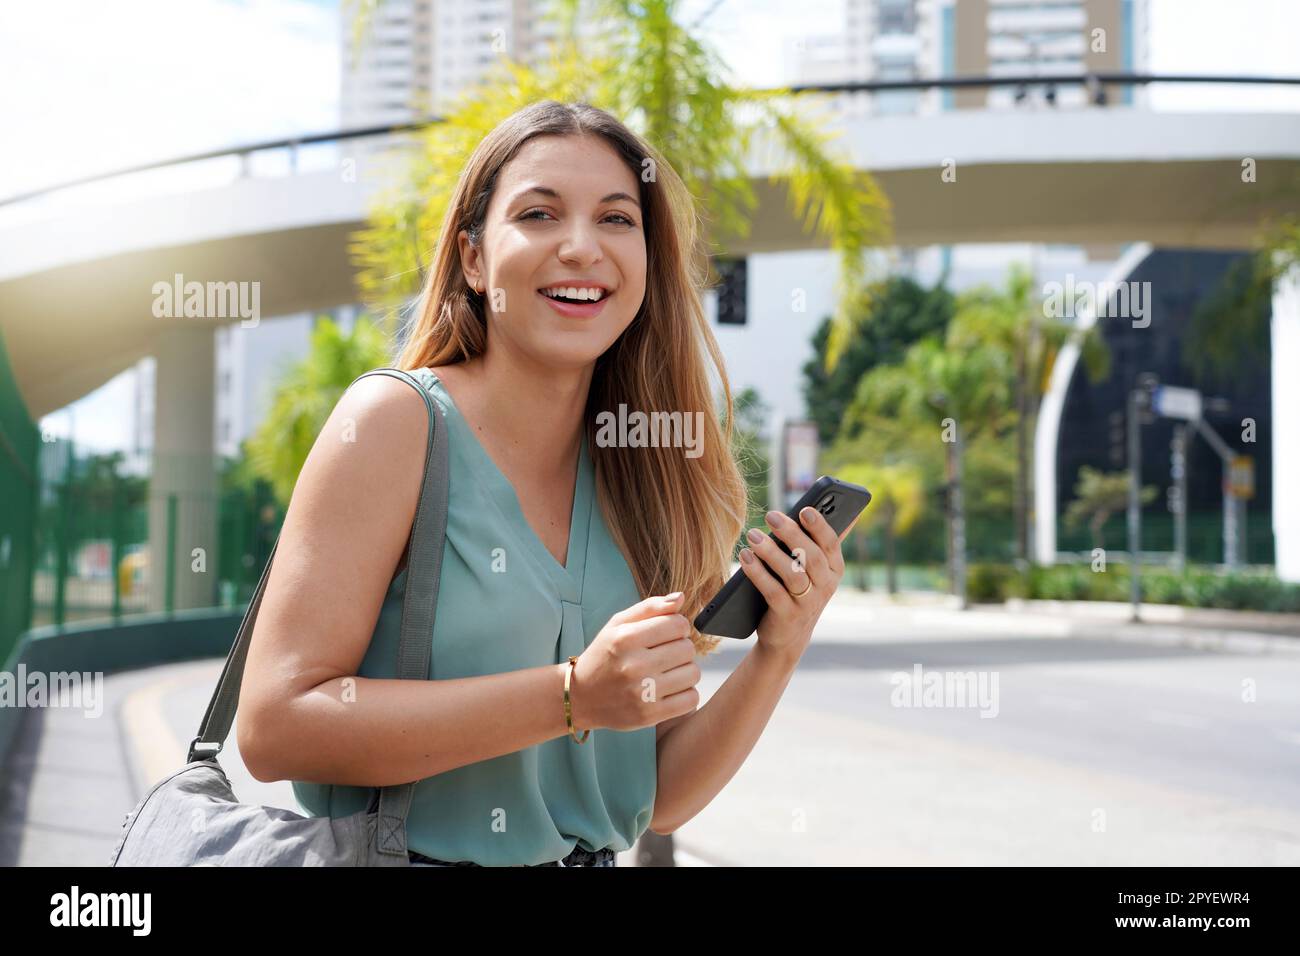 Portrait demi-longueur de femme brésilienne joyeuse dans la rue à l'aide d'un smartphone. Belle jeune fille millénaire regardant la caméra dans la ville tenant le téléphone portable. Banque D'Images